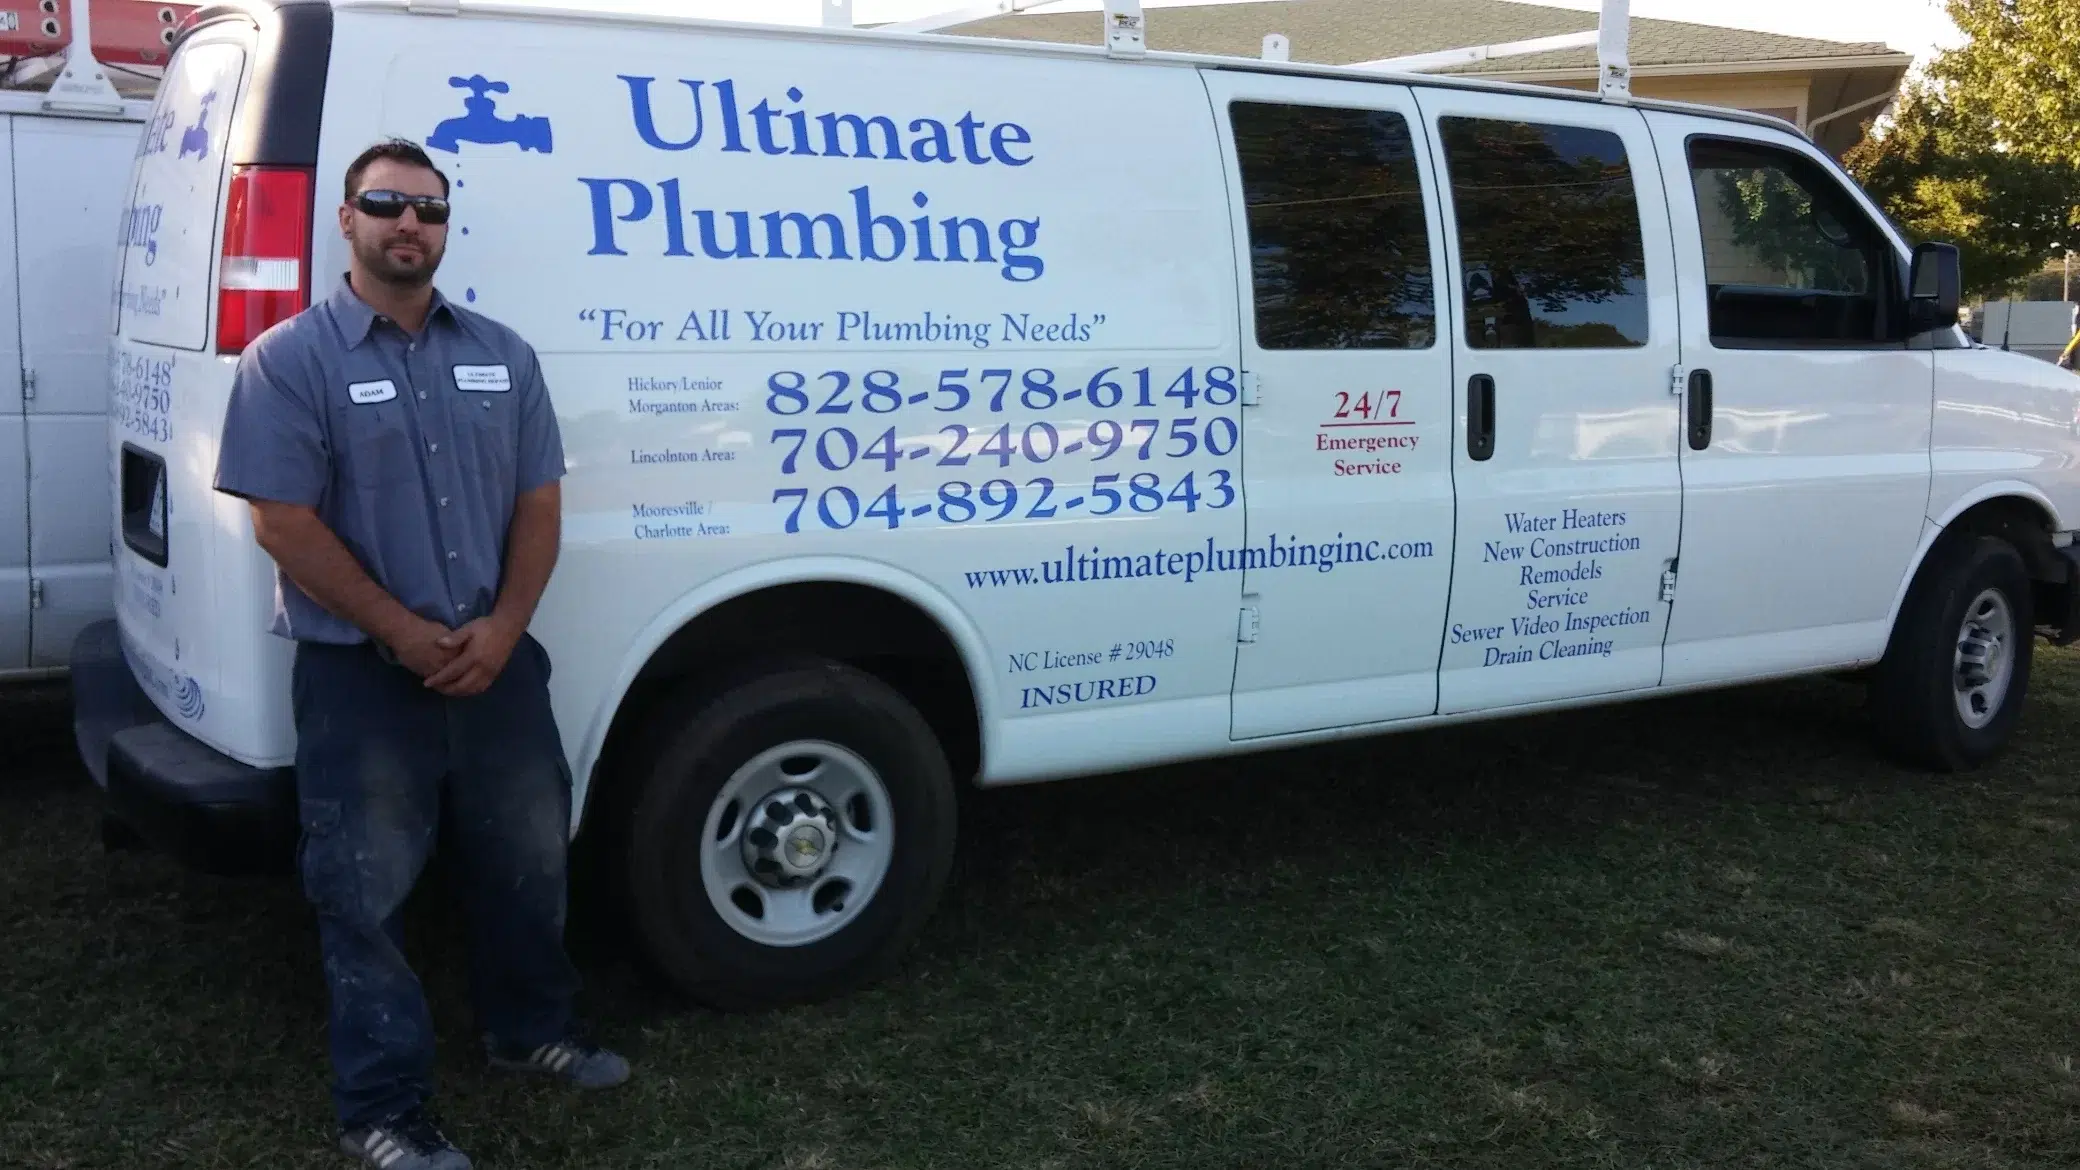 Ultimate Plumbing technician standing by branded van